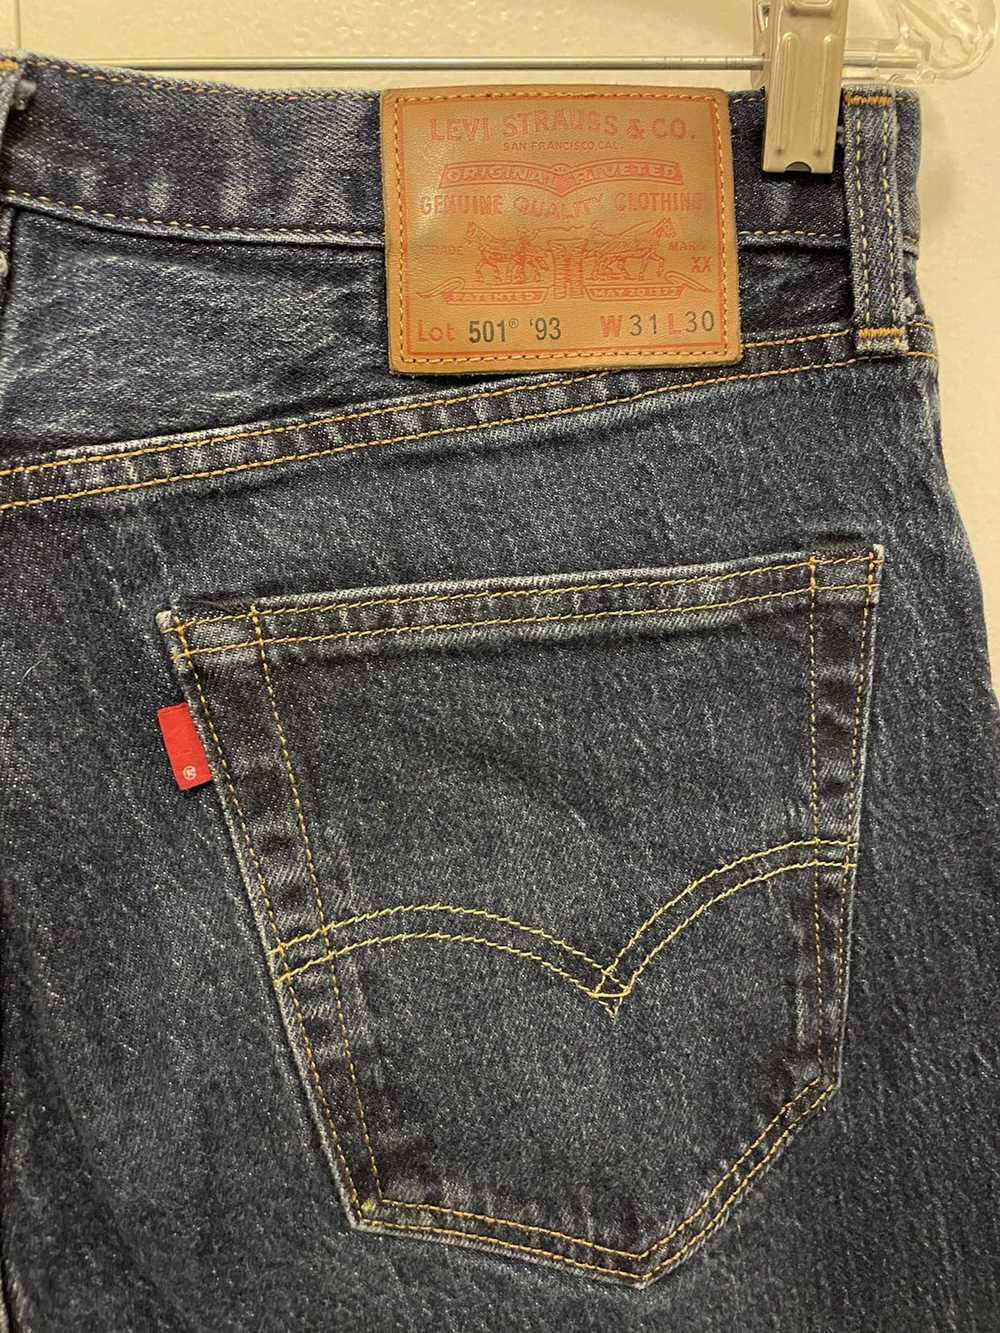 Levi's LEVI 501 jeans - image 4